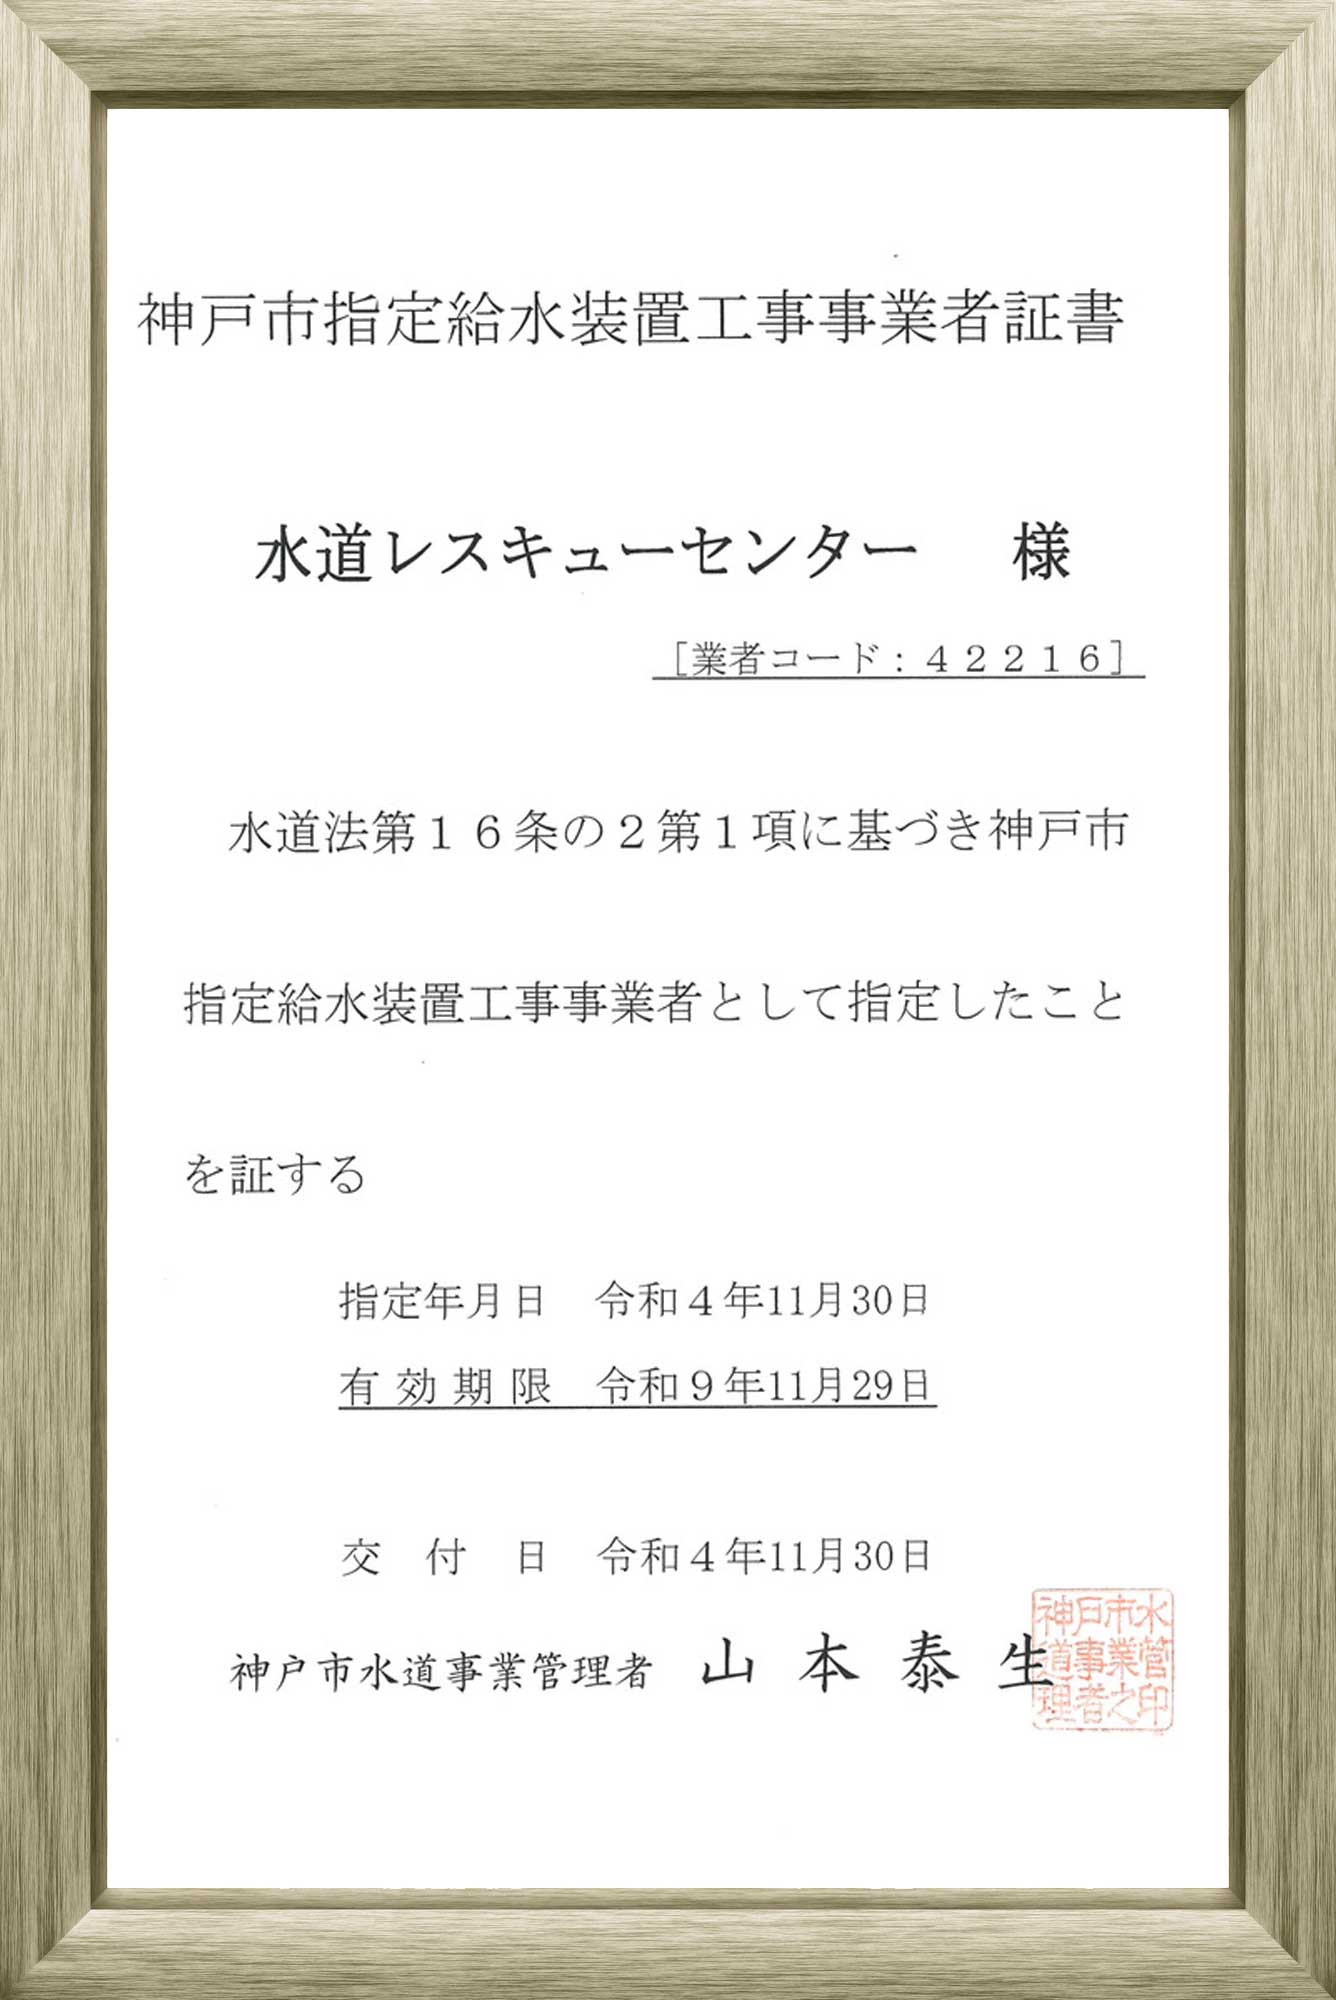 神戸市指定給水装置工事事業者